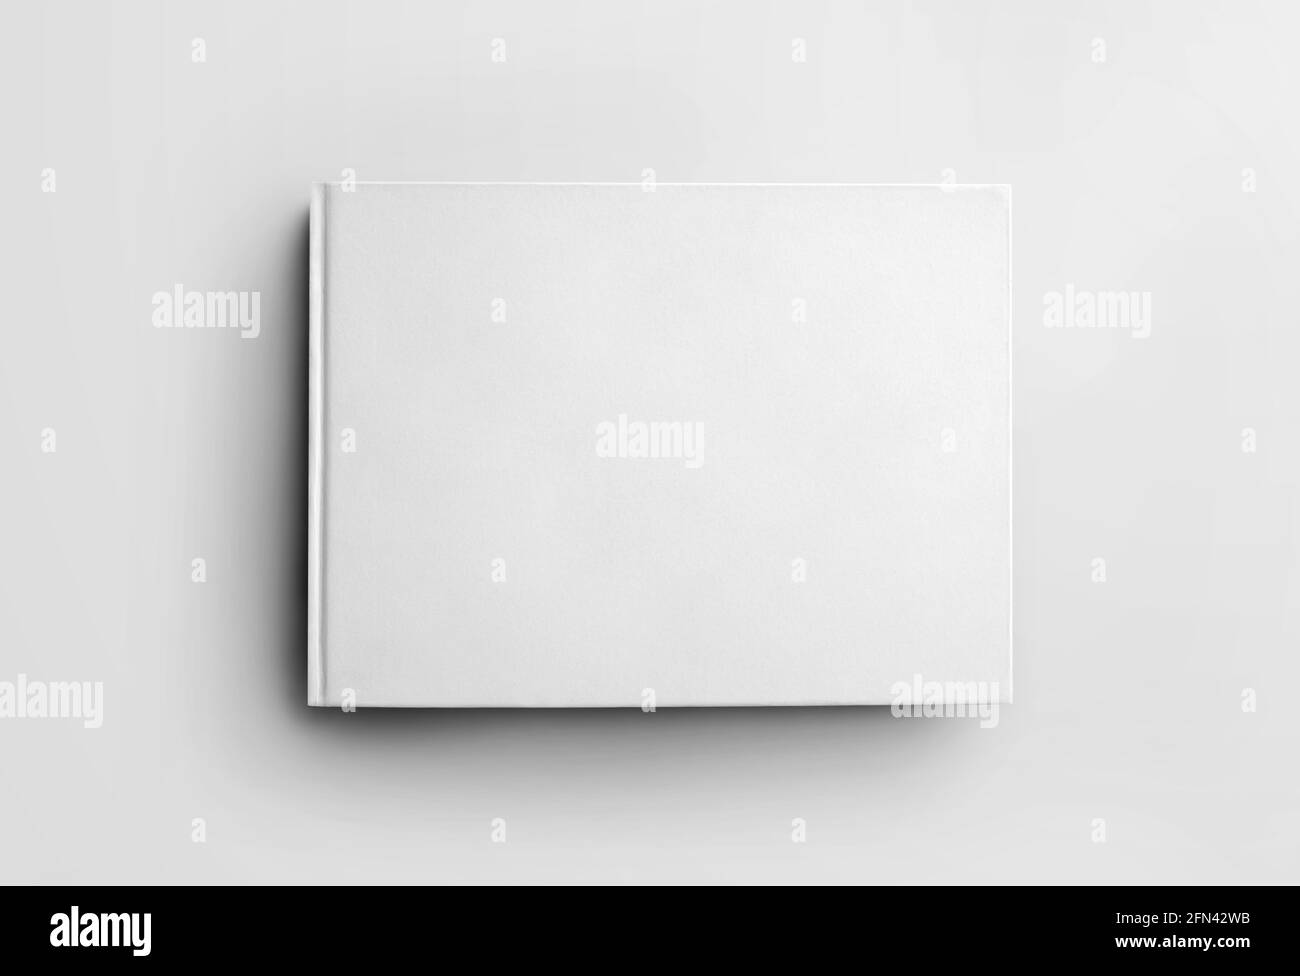 Modell leeres weißes geschlossenes Buch isoliert auf Hintergrund, Vorderansicht. Hardcover-Objektvorlage für die Ausrichtung im Hochformat für die Designpräsentation. Ctalogue l Stockfoto